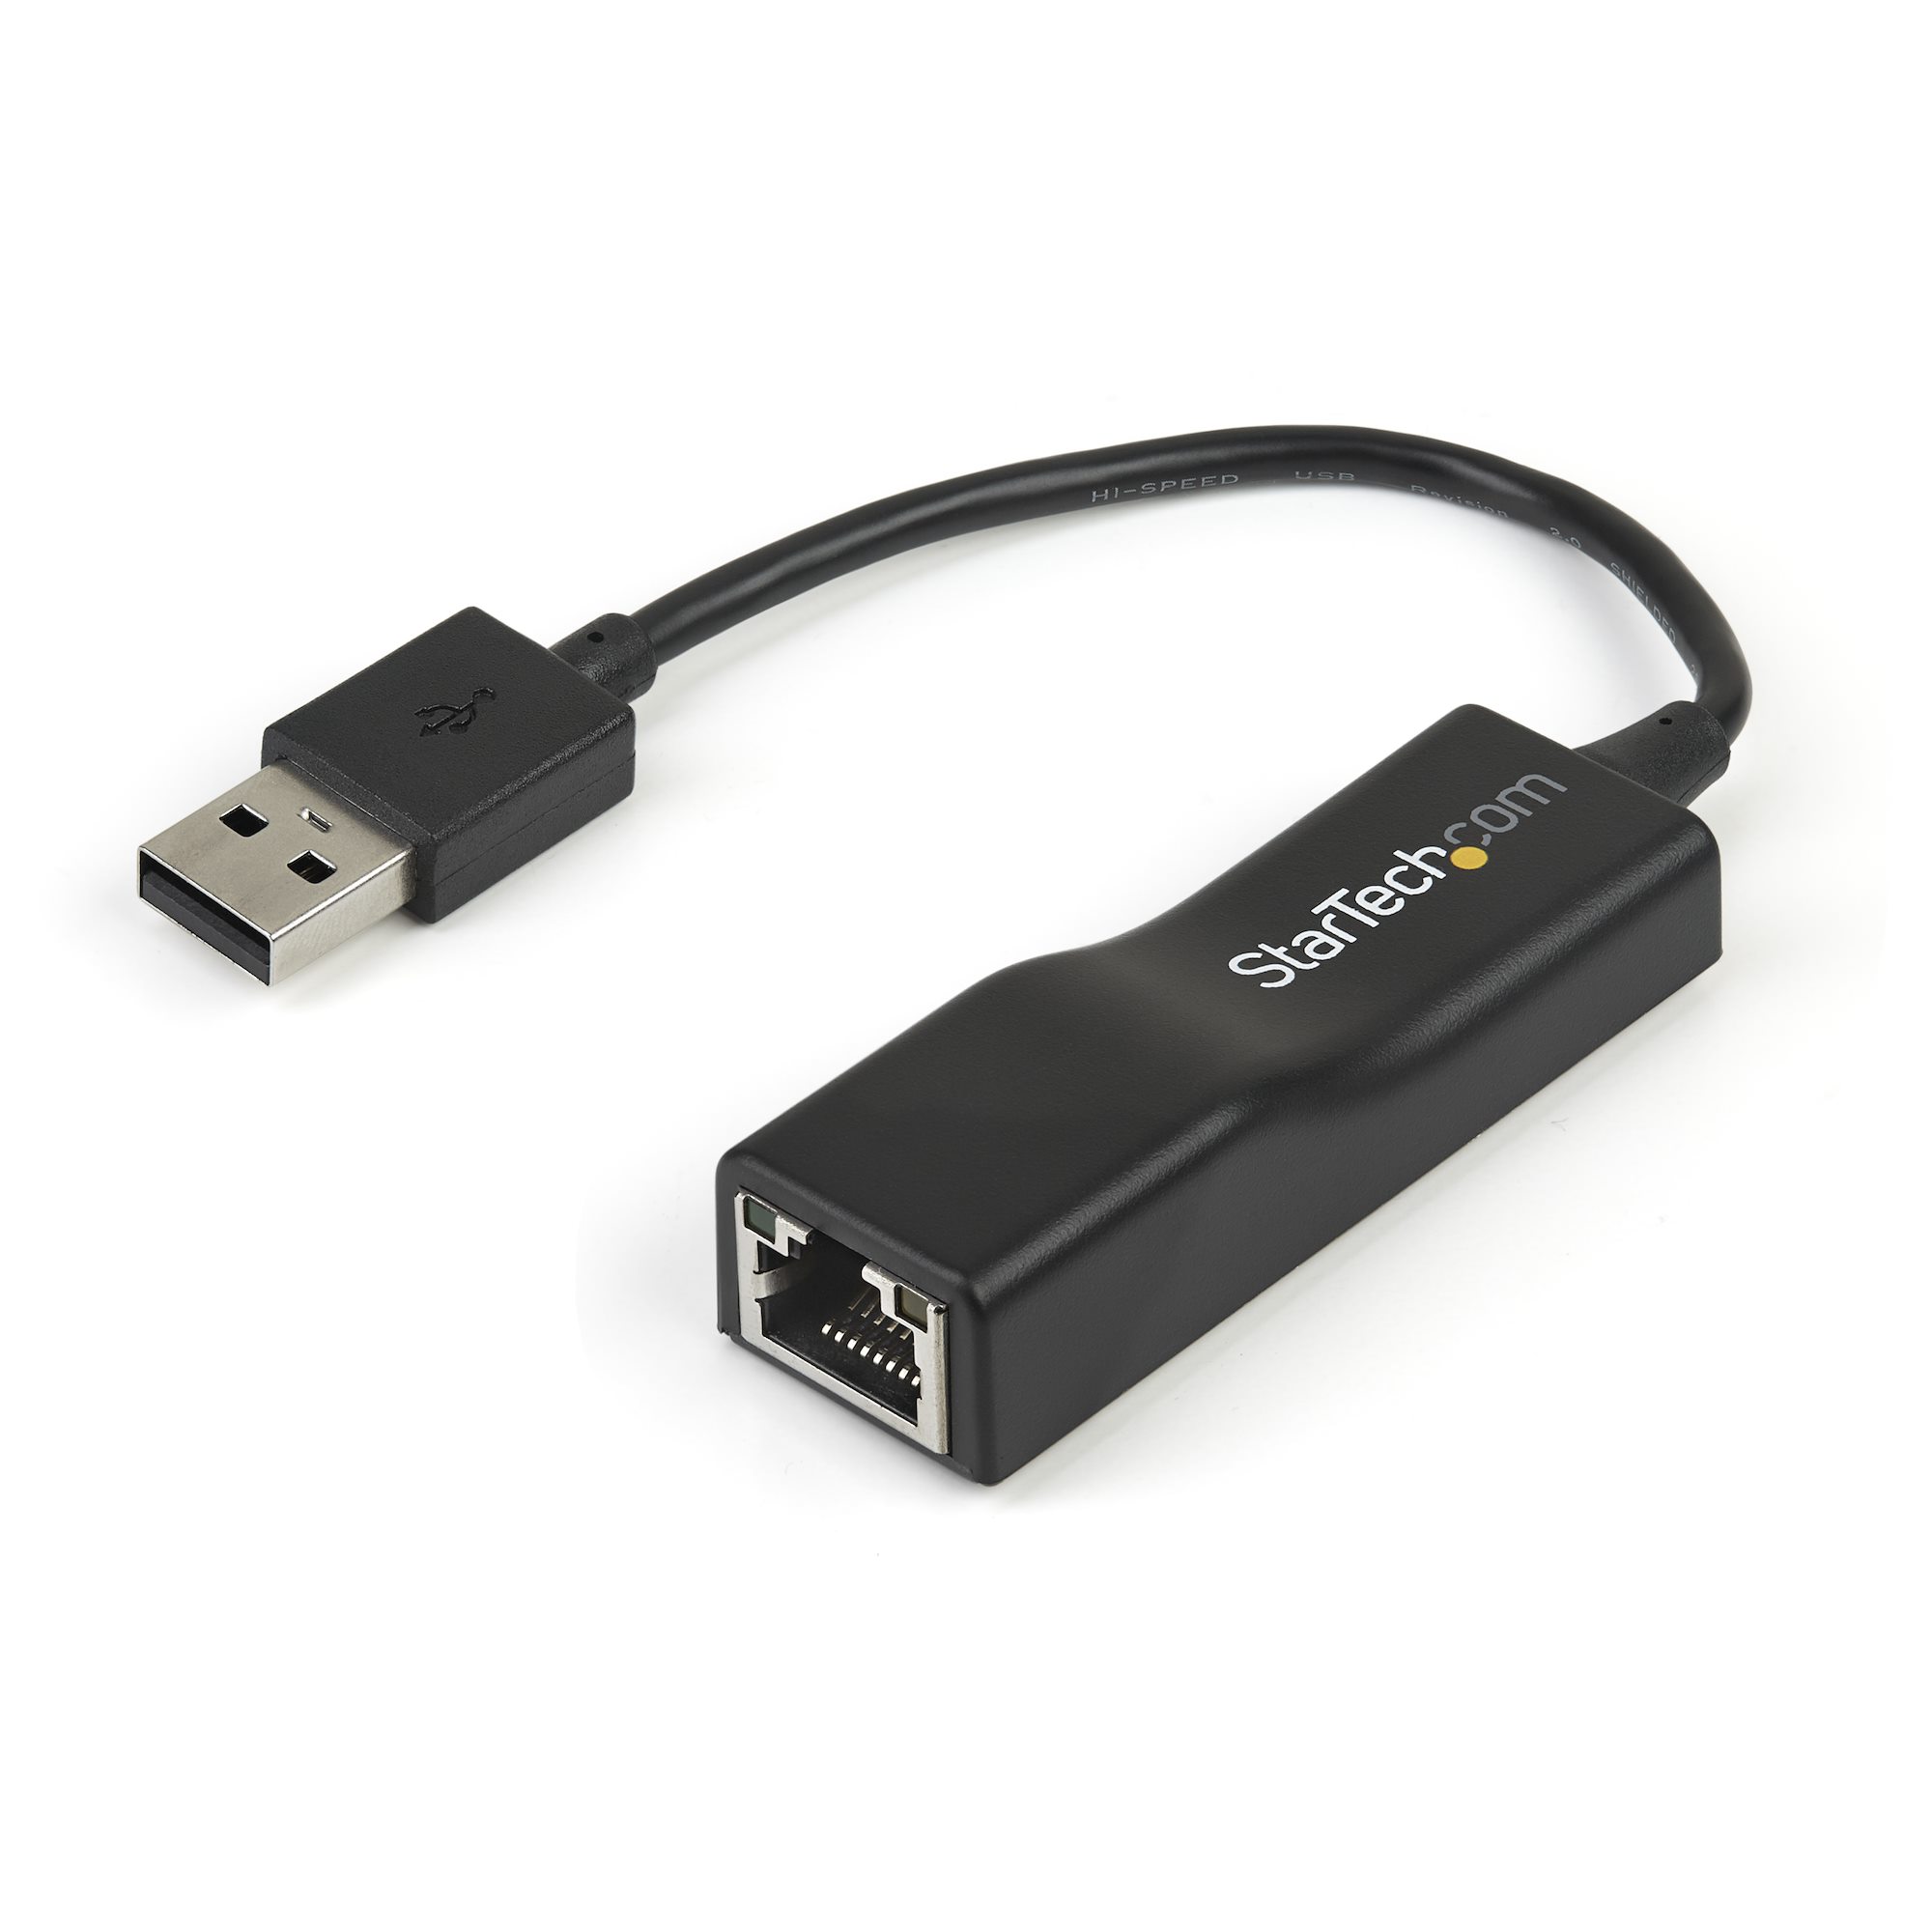 USB 2.0有線LANアダプタ 10/100Mbps対応